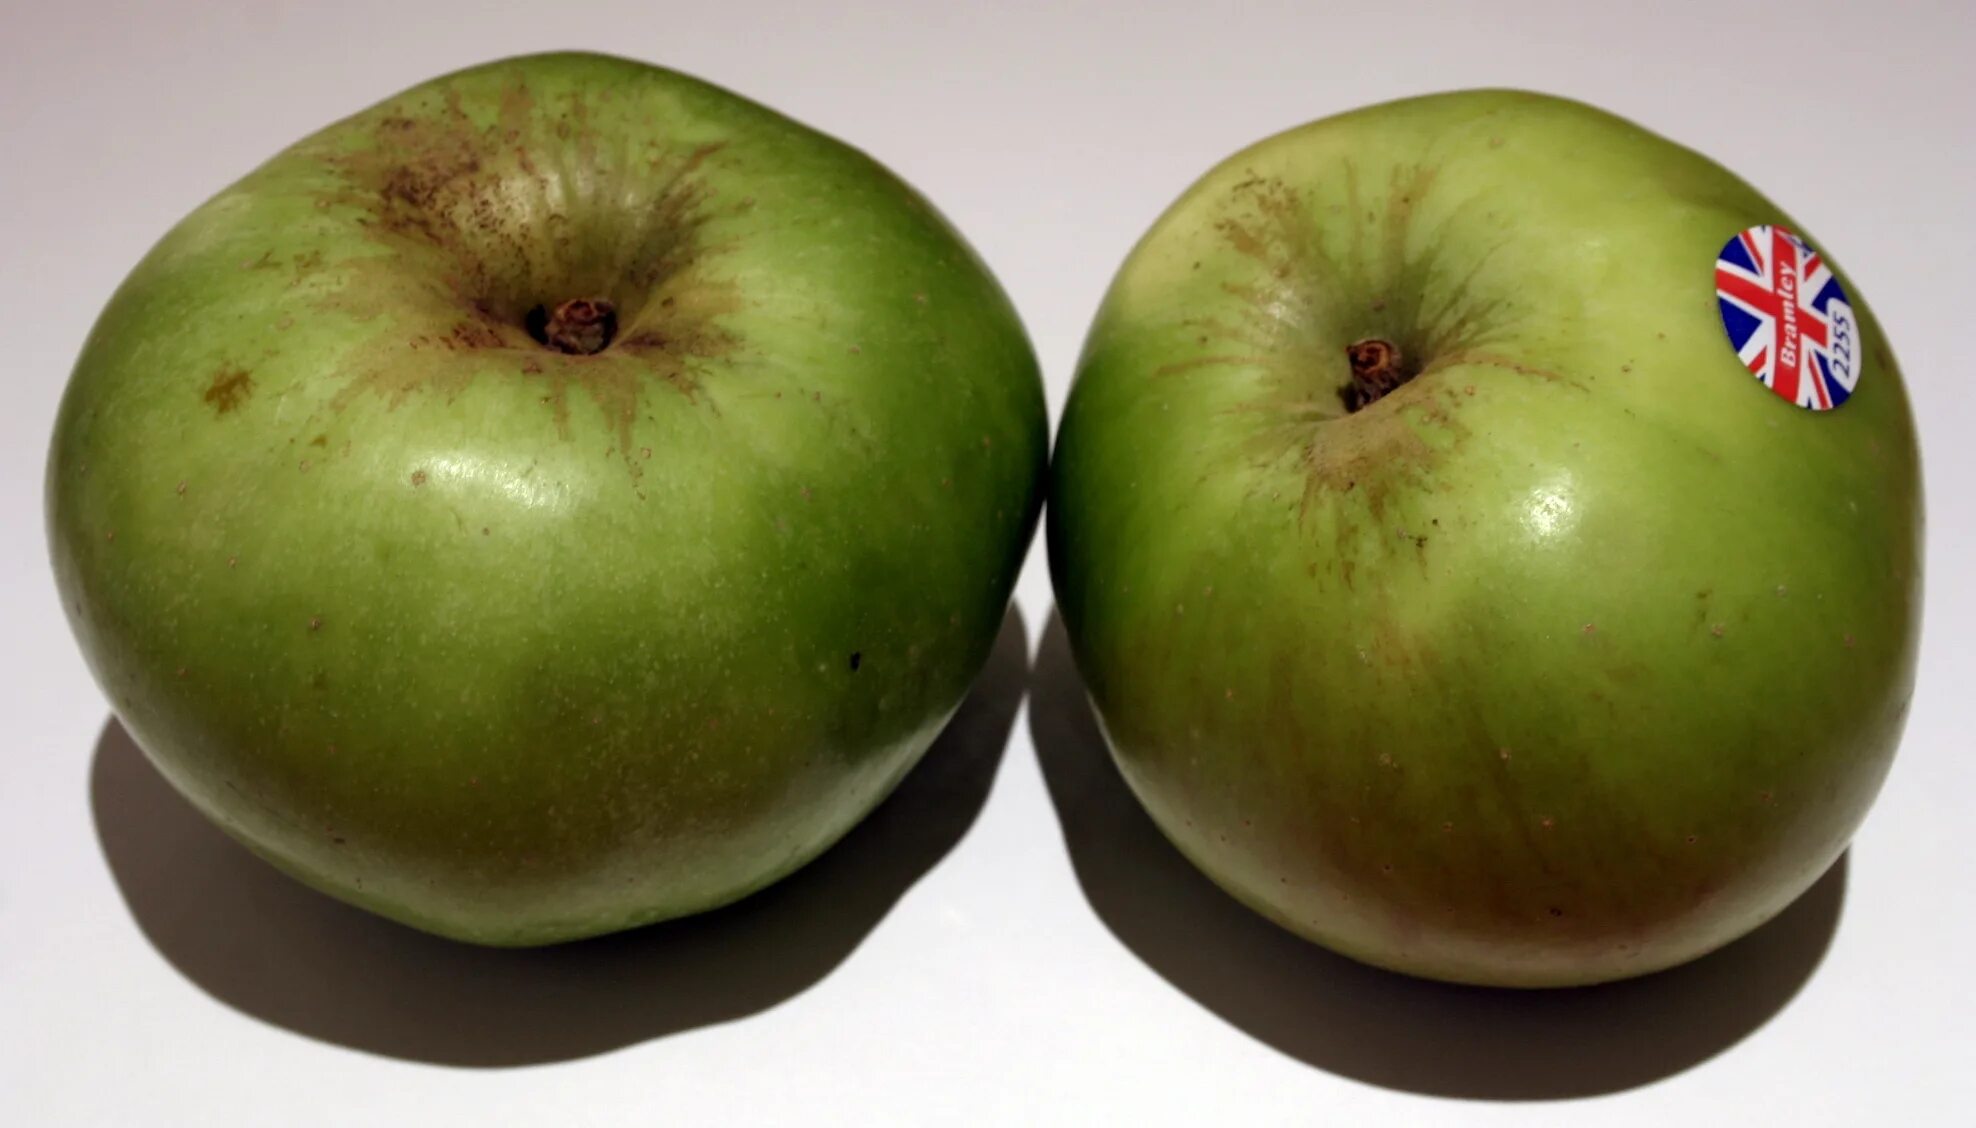 Яблоко 2 сорт. Брамли яблоко. Антоновка (сортотип яблони). Сорта яблок зеленые Крюгер. Зимний сорт зеленых яблок.